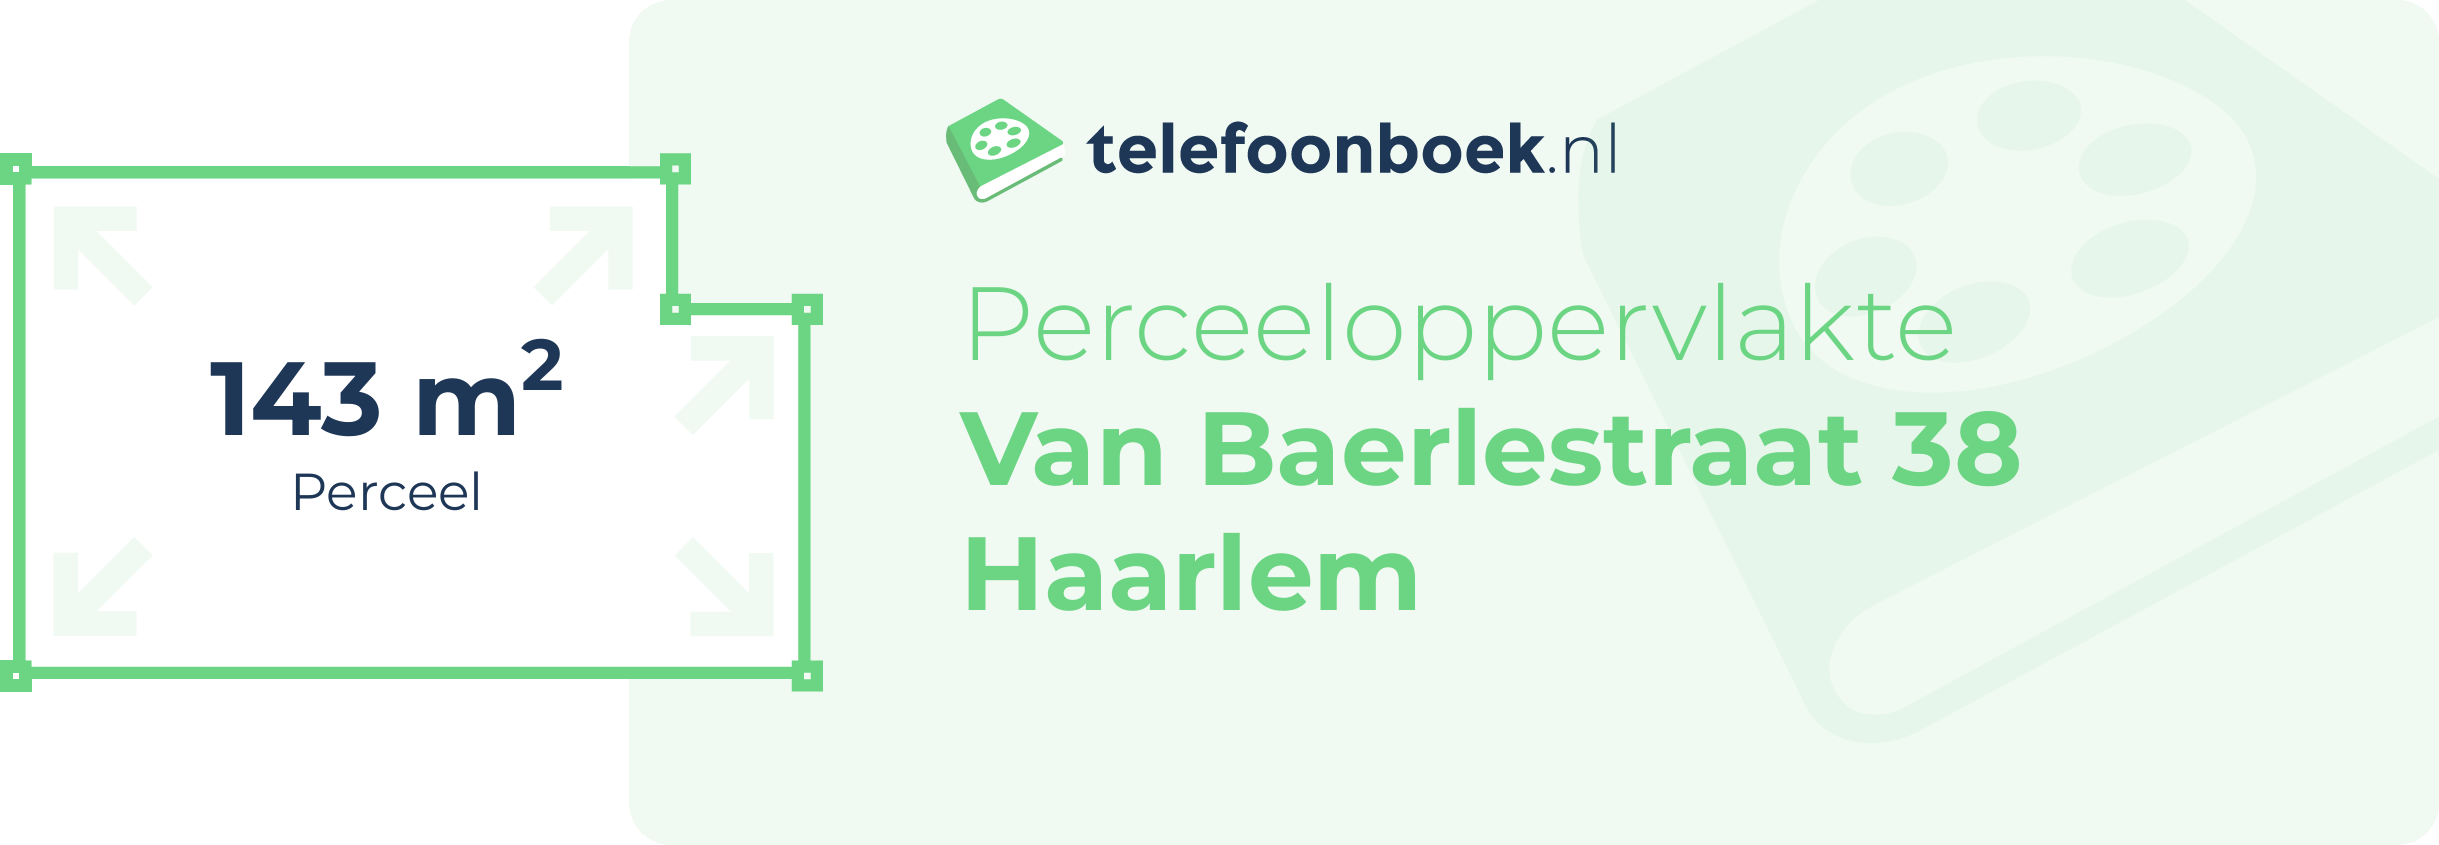 Perceeloppervlakte Van Baerlestraat 38 Haarlem